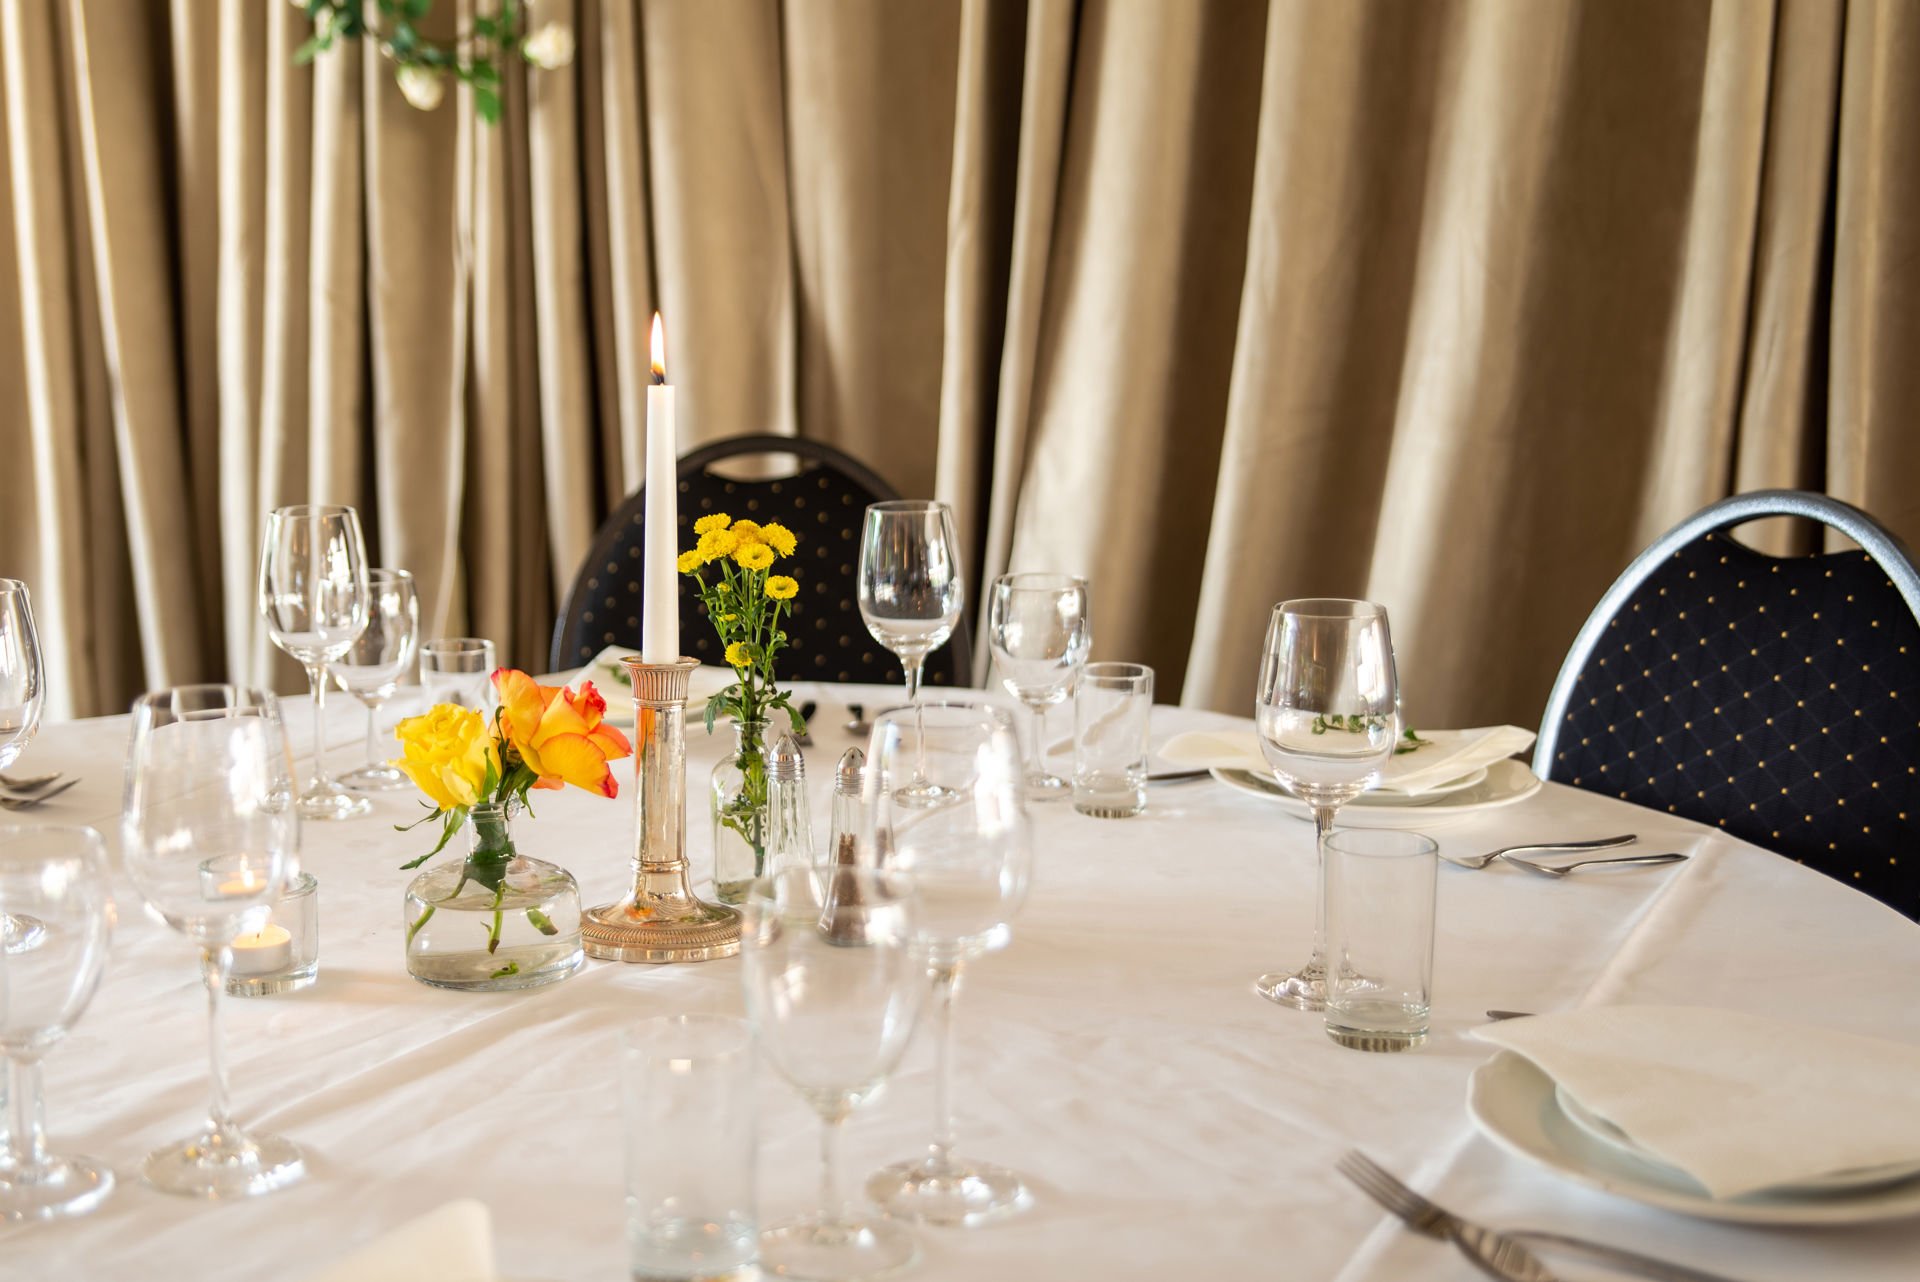 Pent oppdekket bord med hvit duk, ulike typer glass, blomster og stearinlys